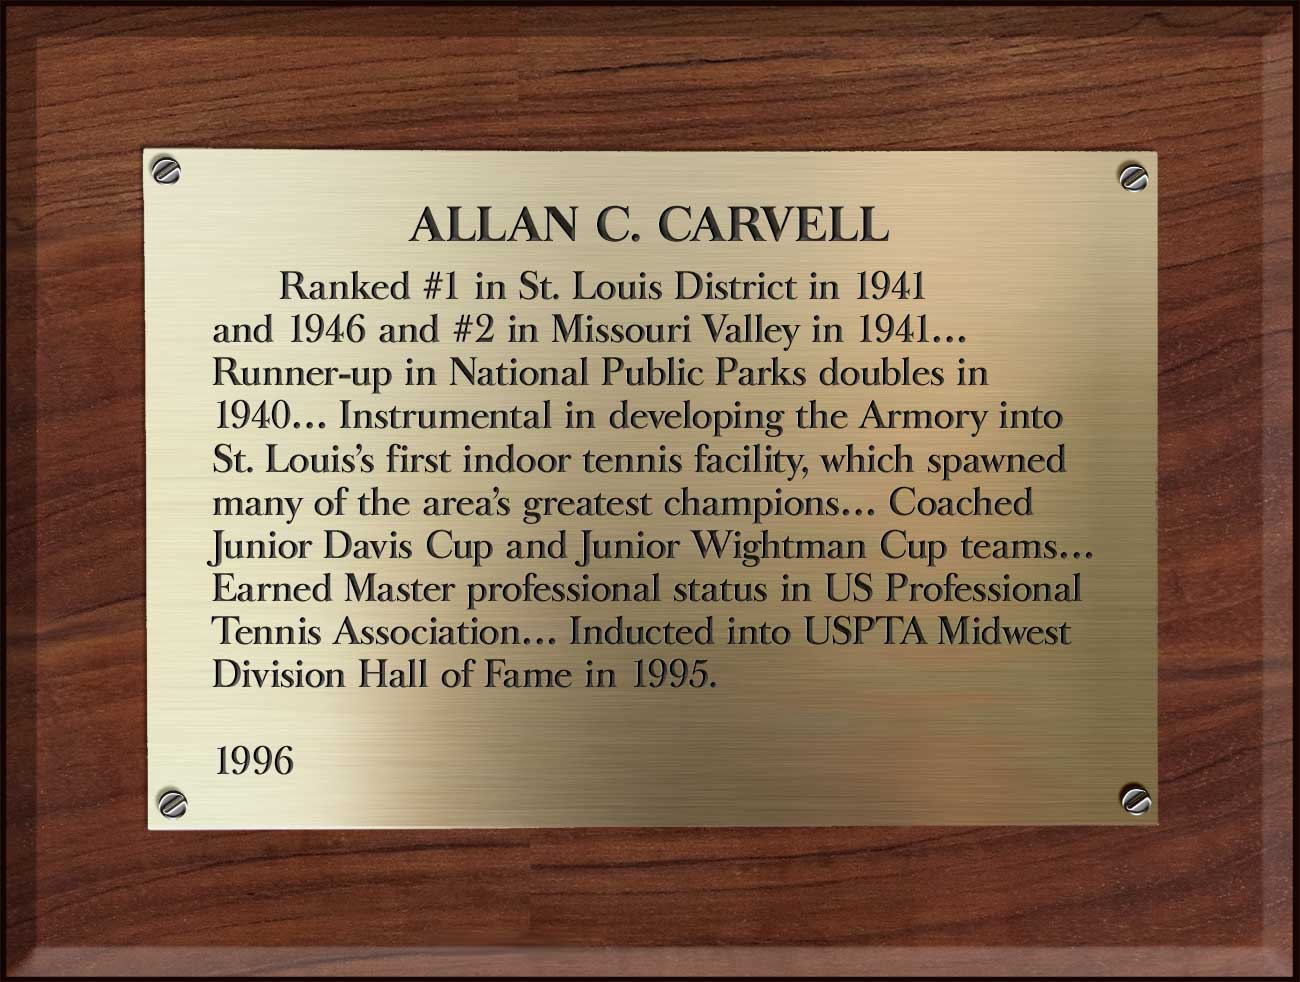 Allan Carvell